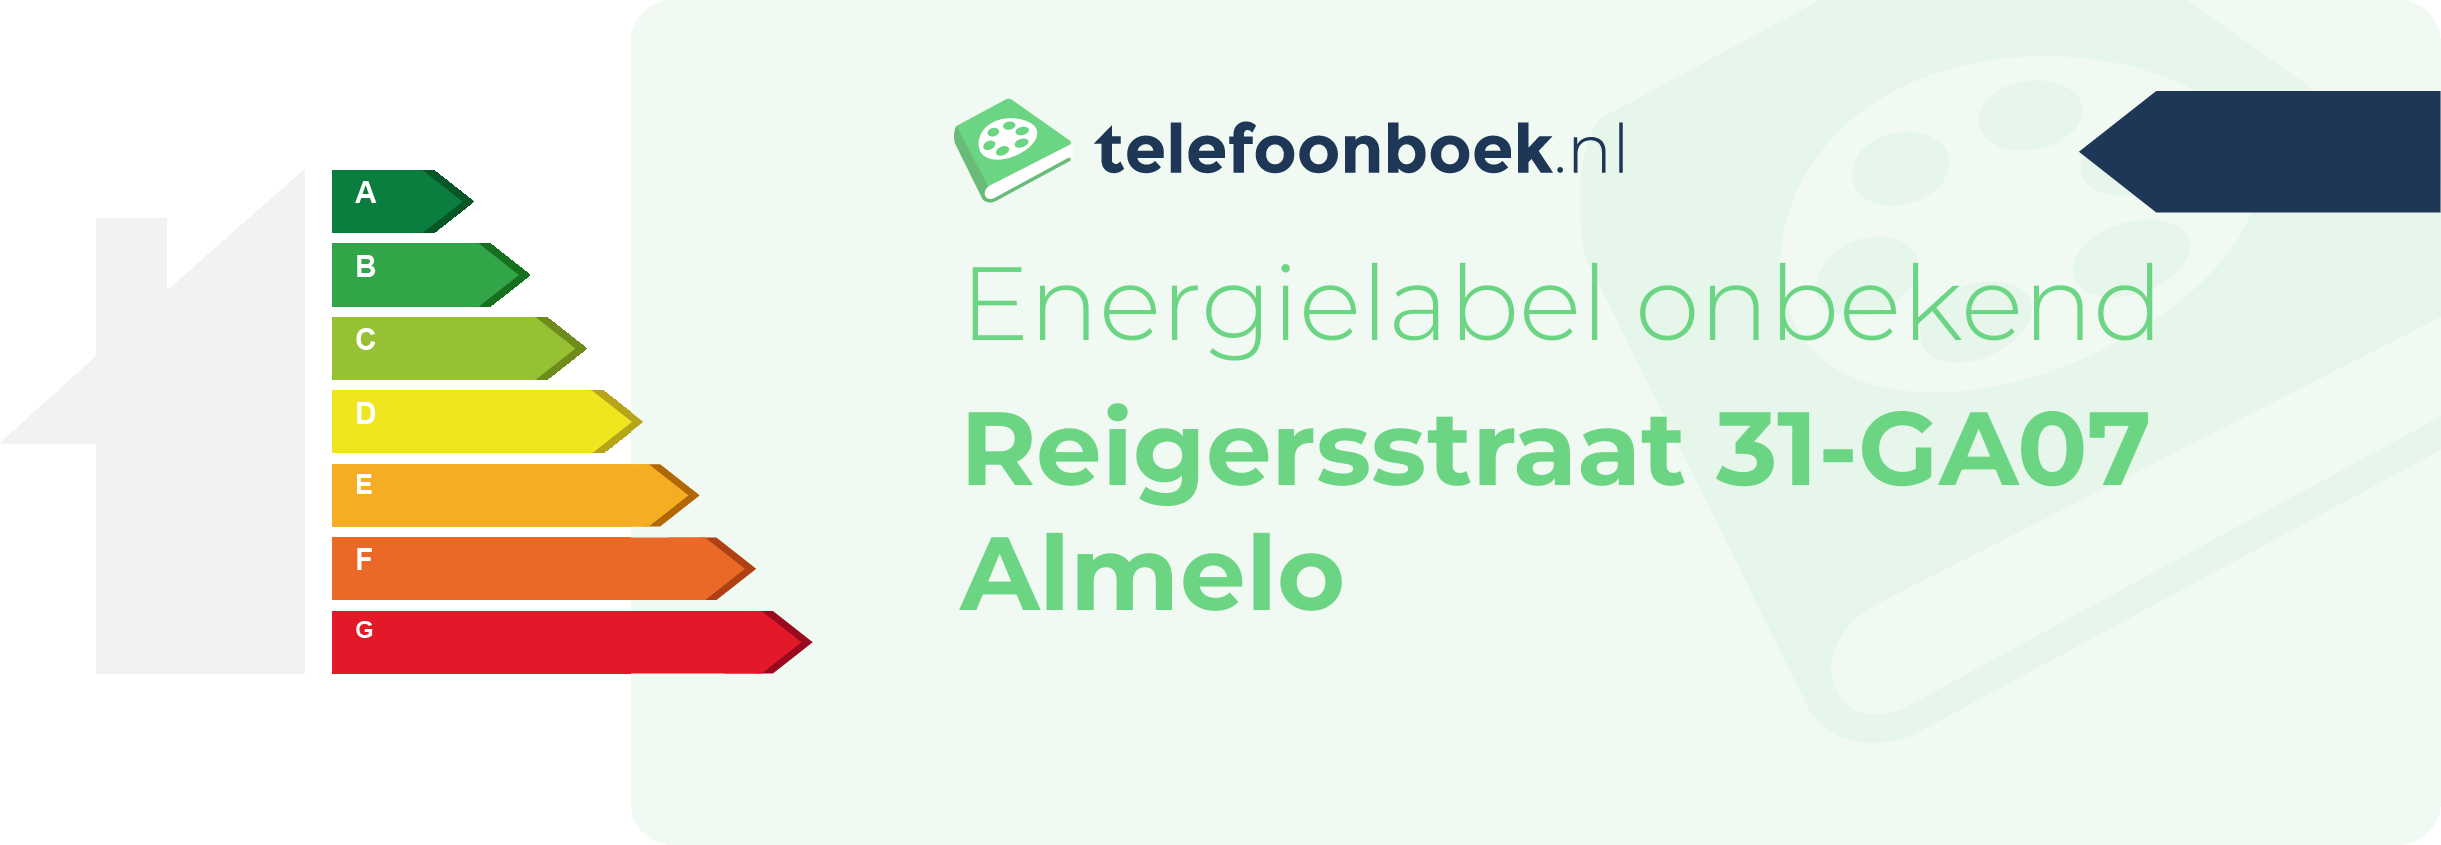 Energielabel Reigersstraat 31-GA07 Almelo